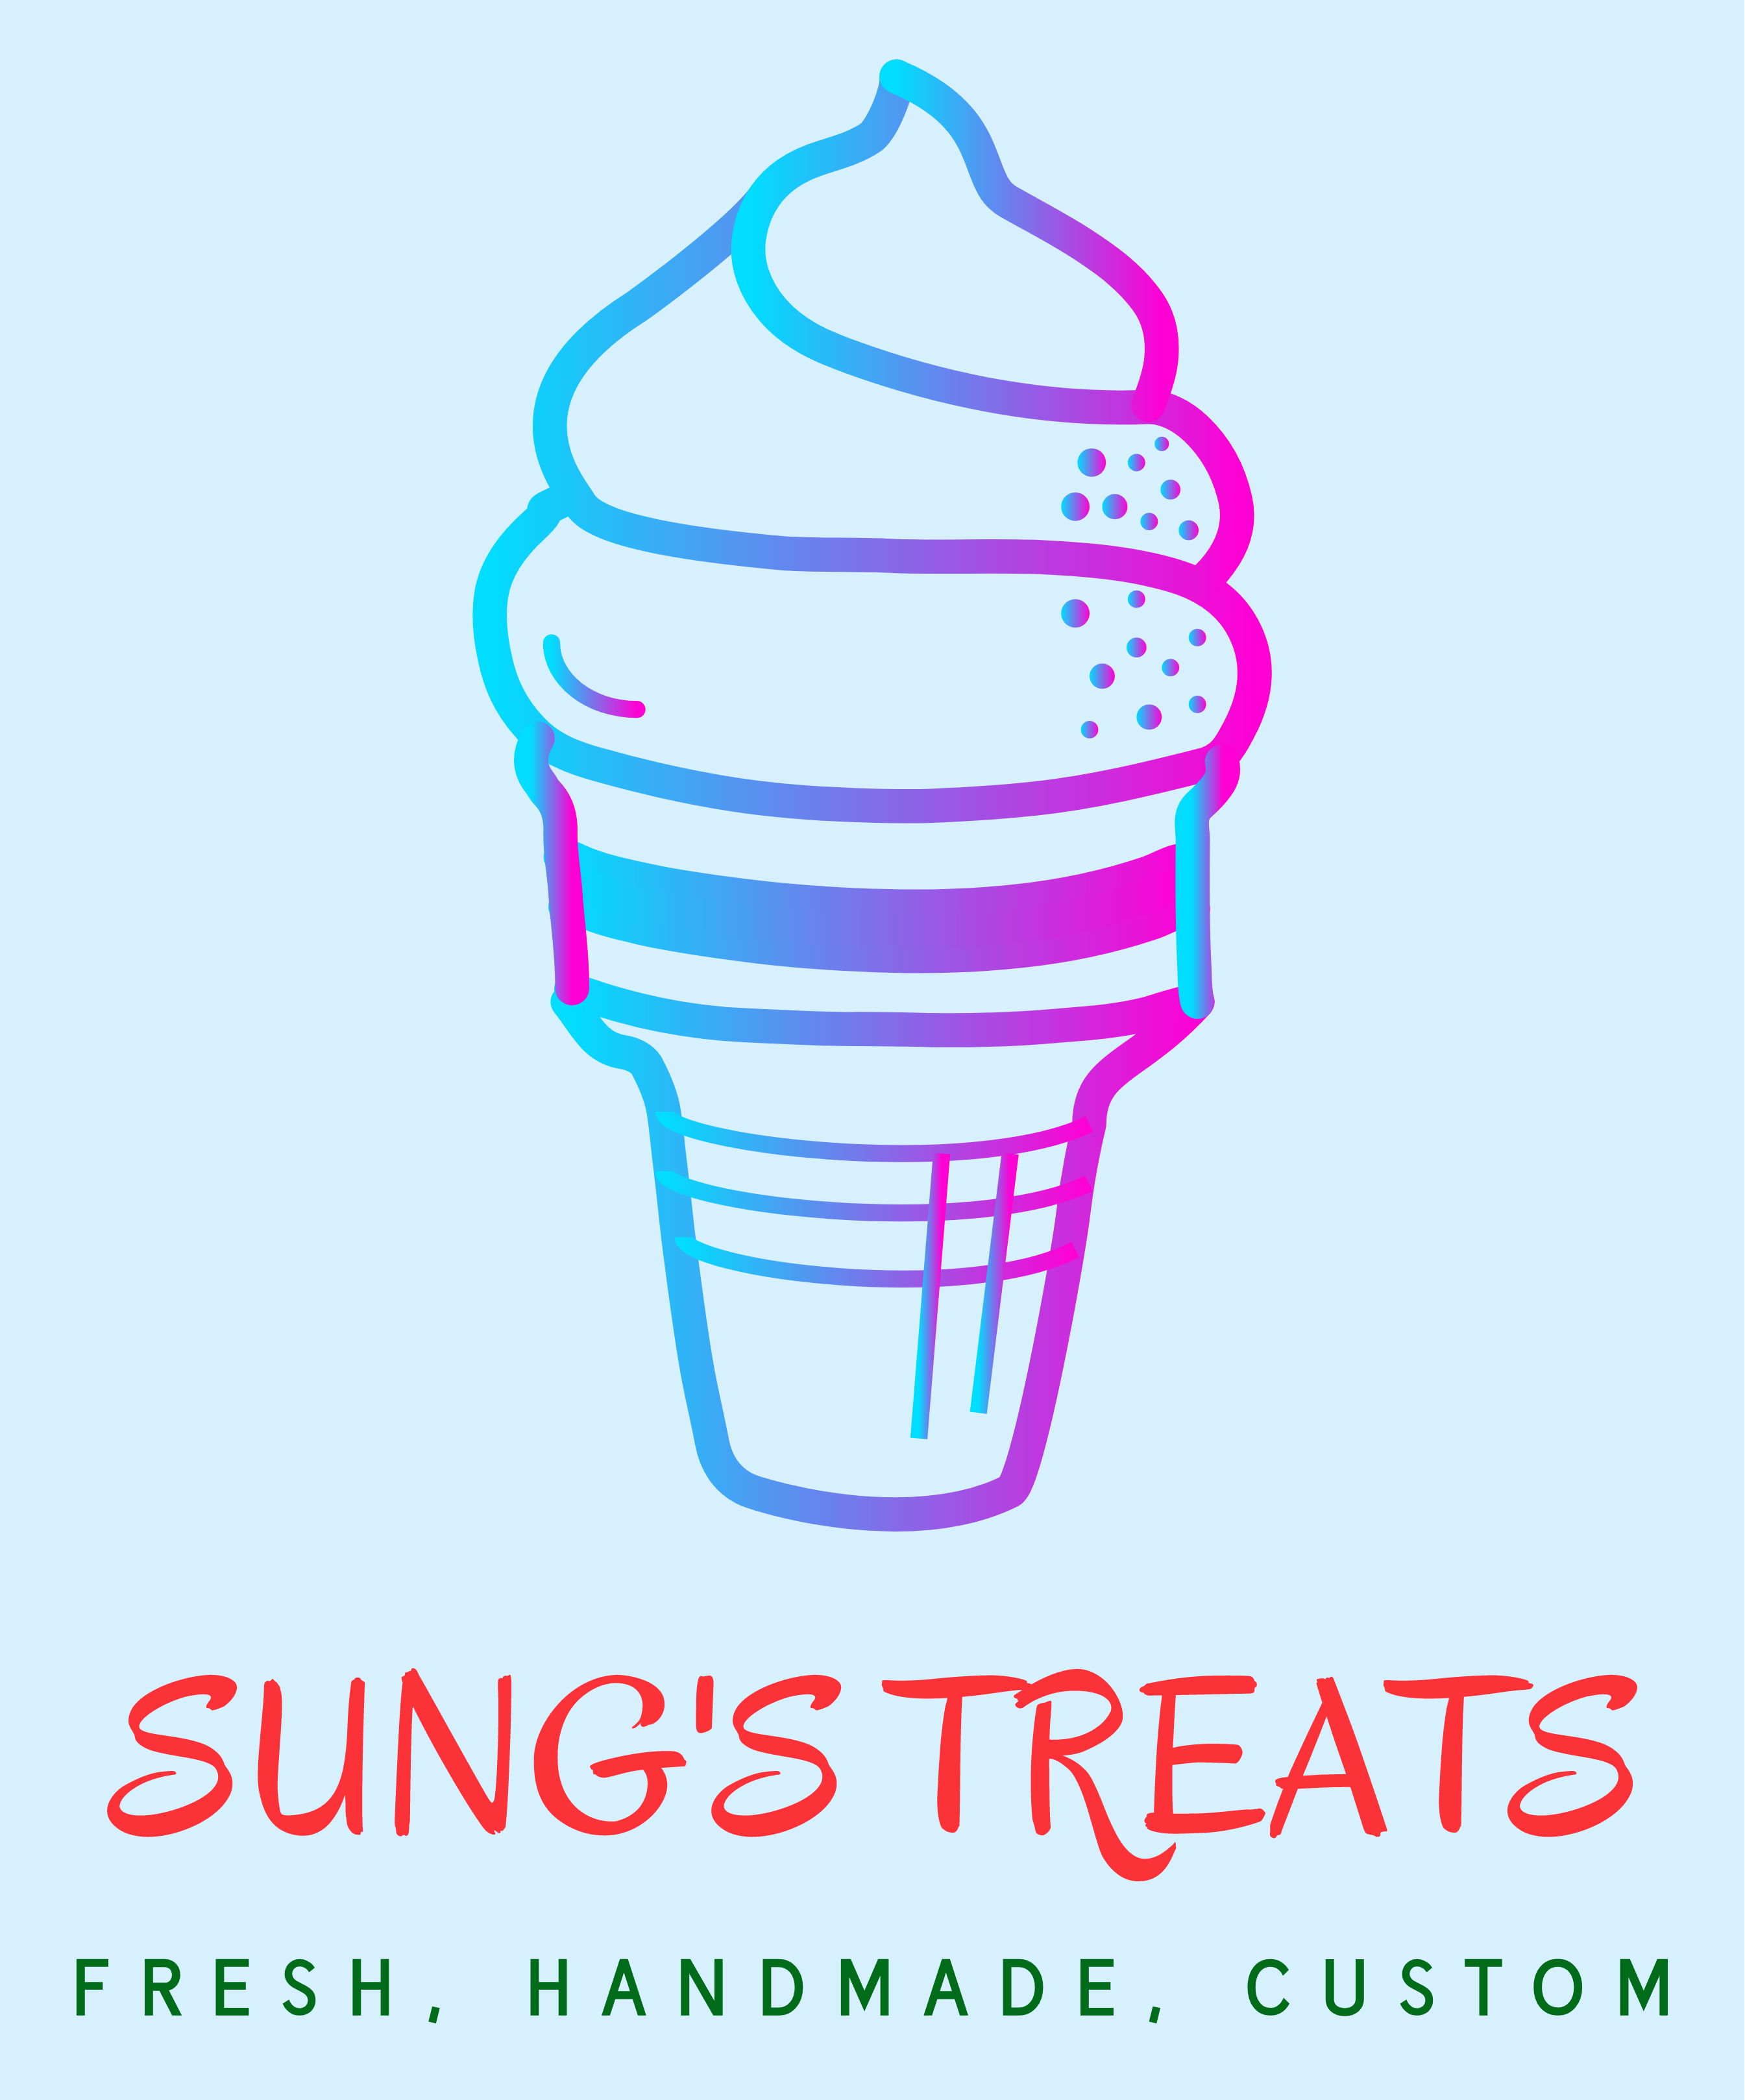 Sung's Treats